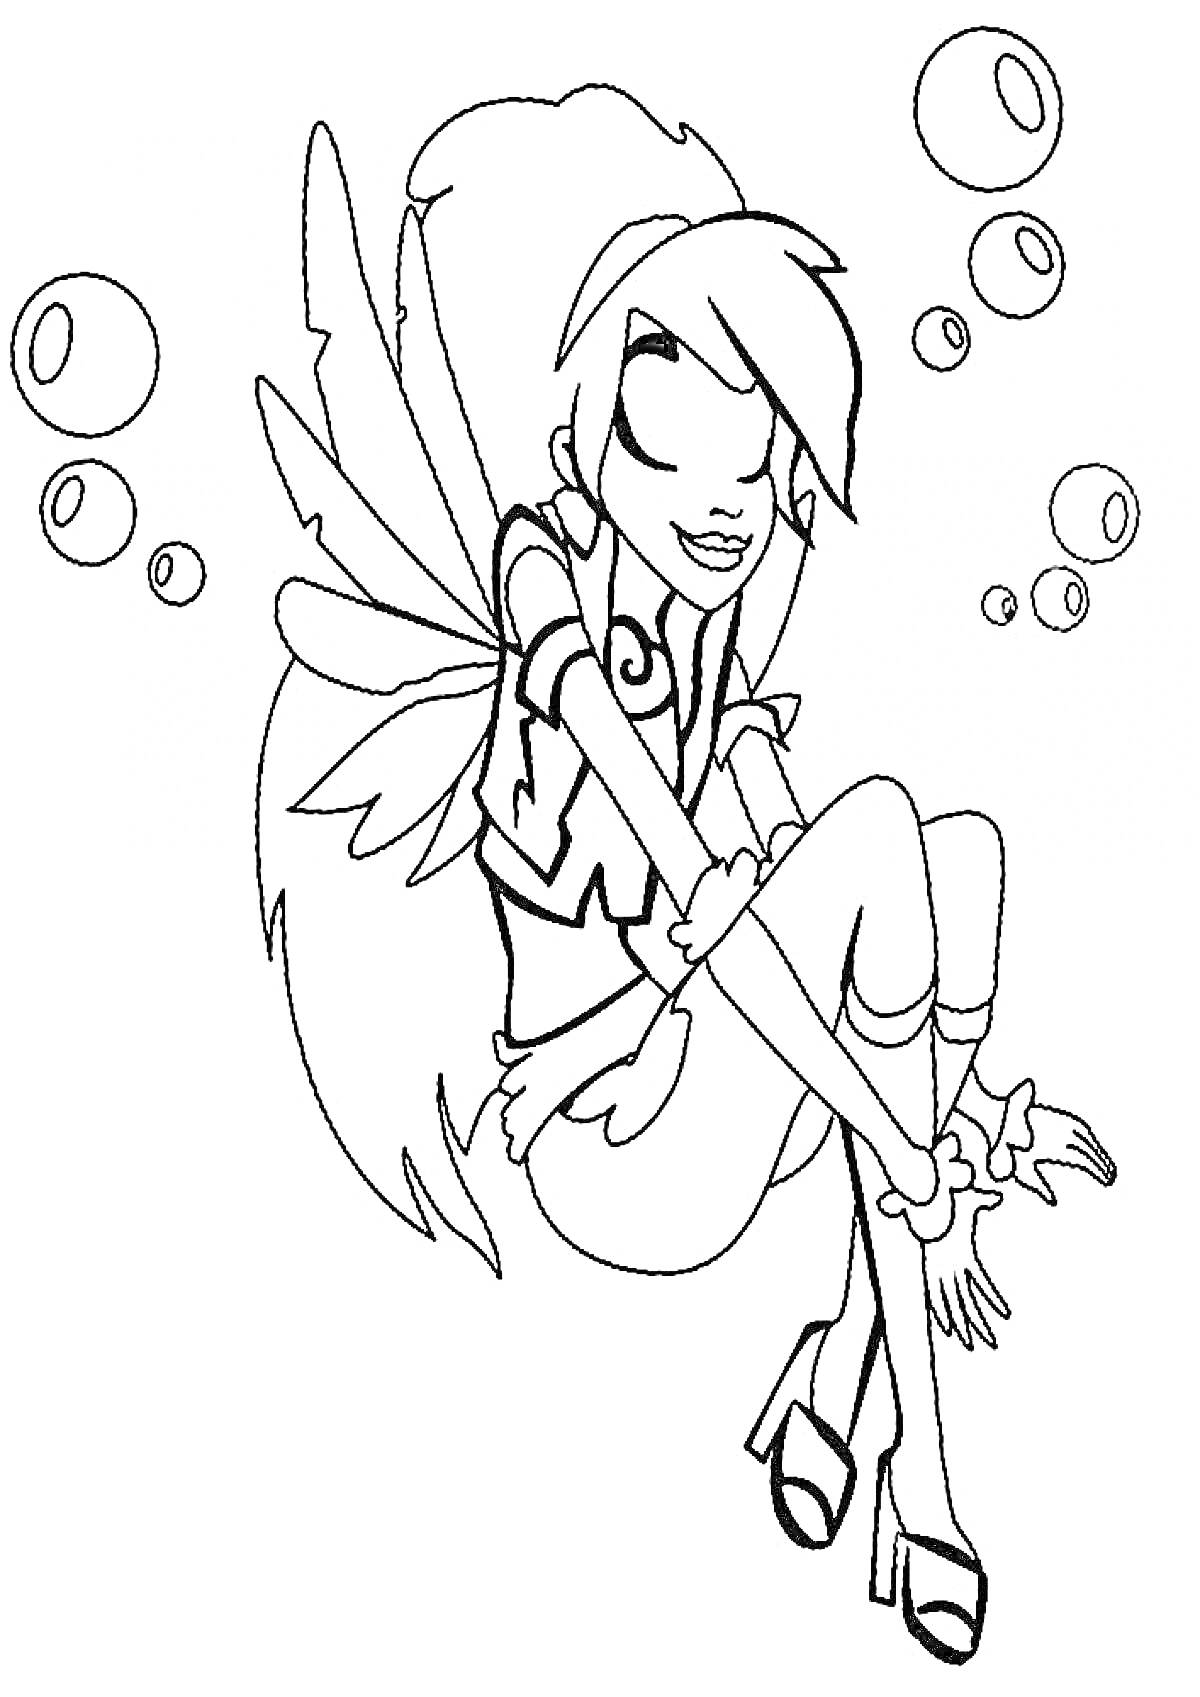 Раскраска Девушка с крыльями, сидящая на корточках и окруженная пузырьками